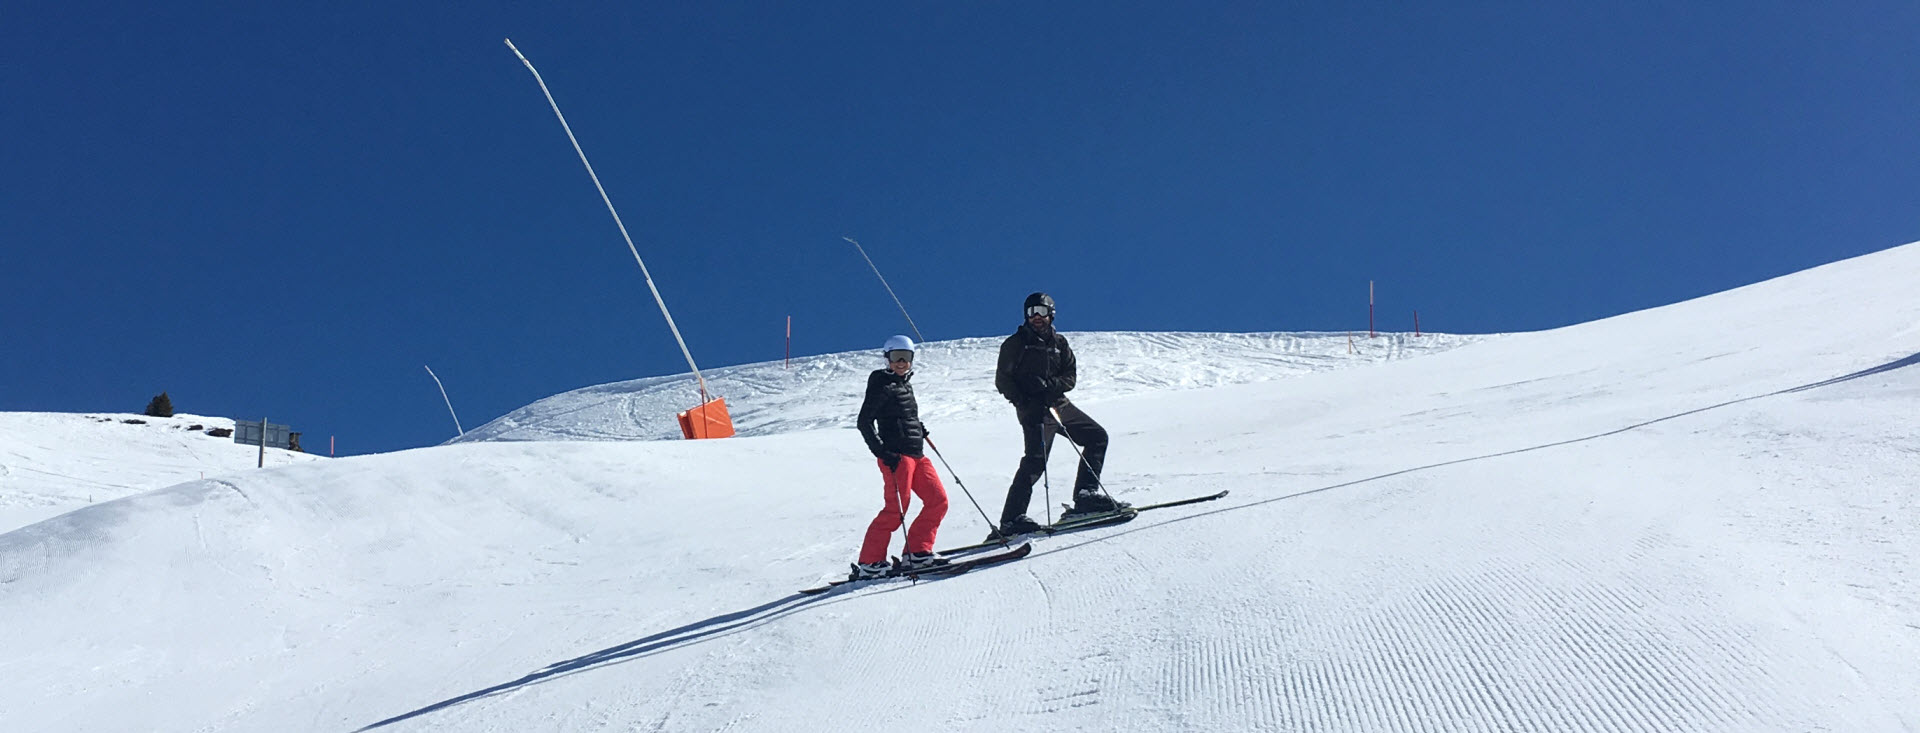 Woche 30/31: 2017-03-20, Skiing season is over